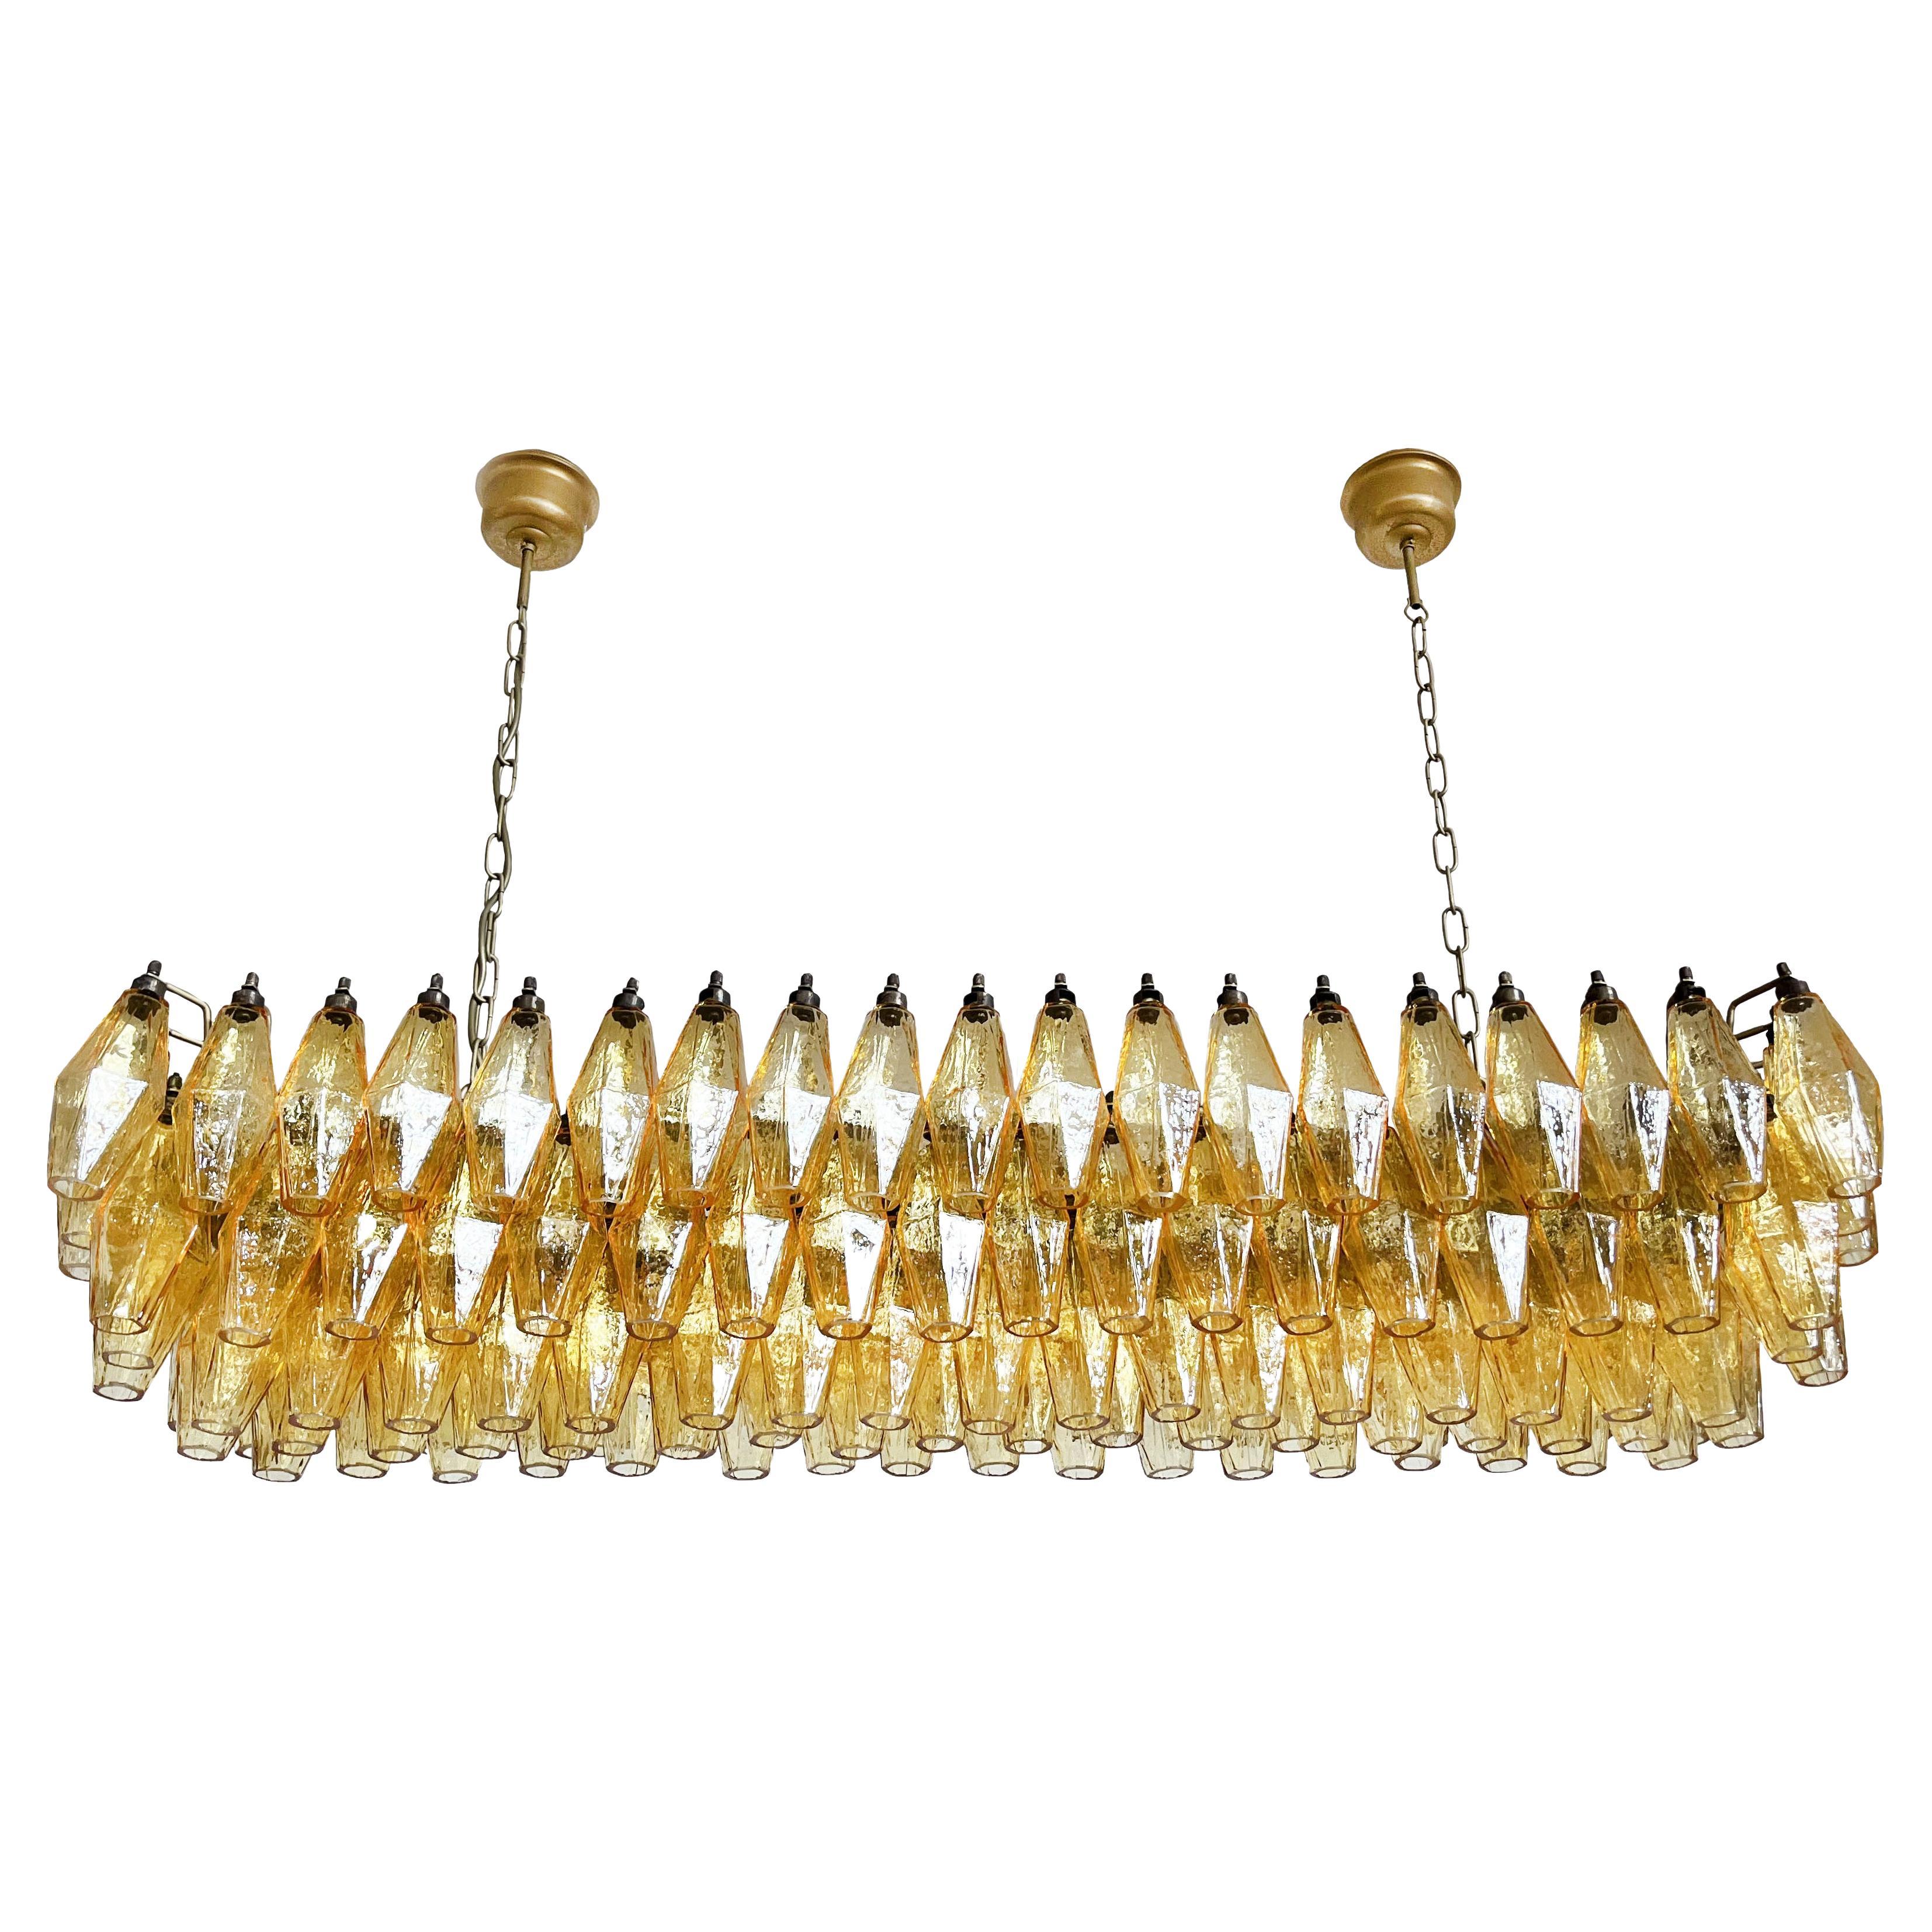 Magnifique lustre Poliedri de Murano de style Carlo Scarpa - 138 verres à ambre